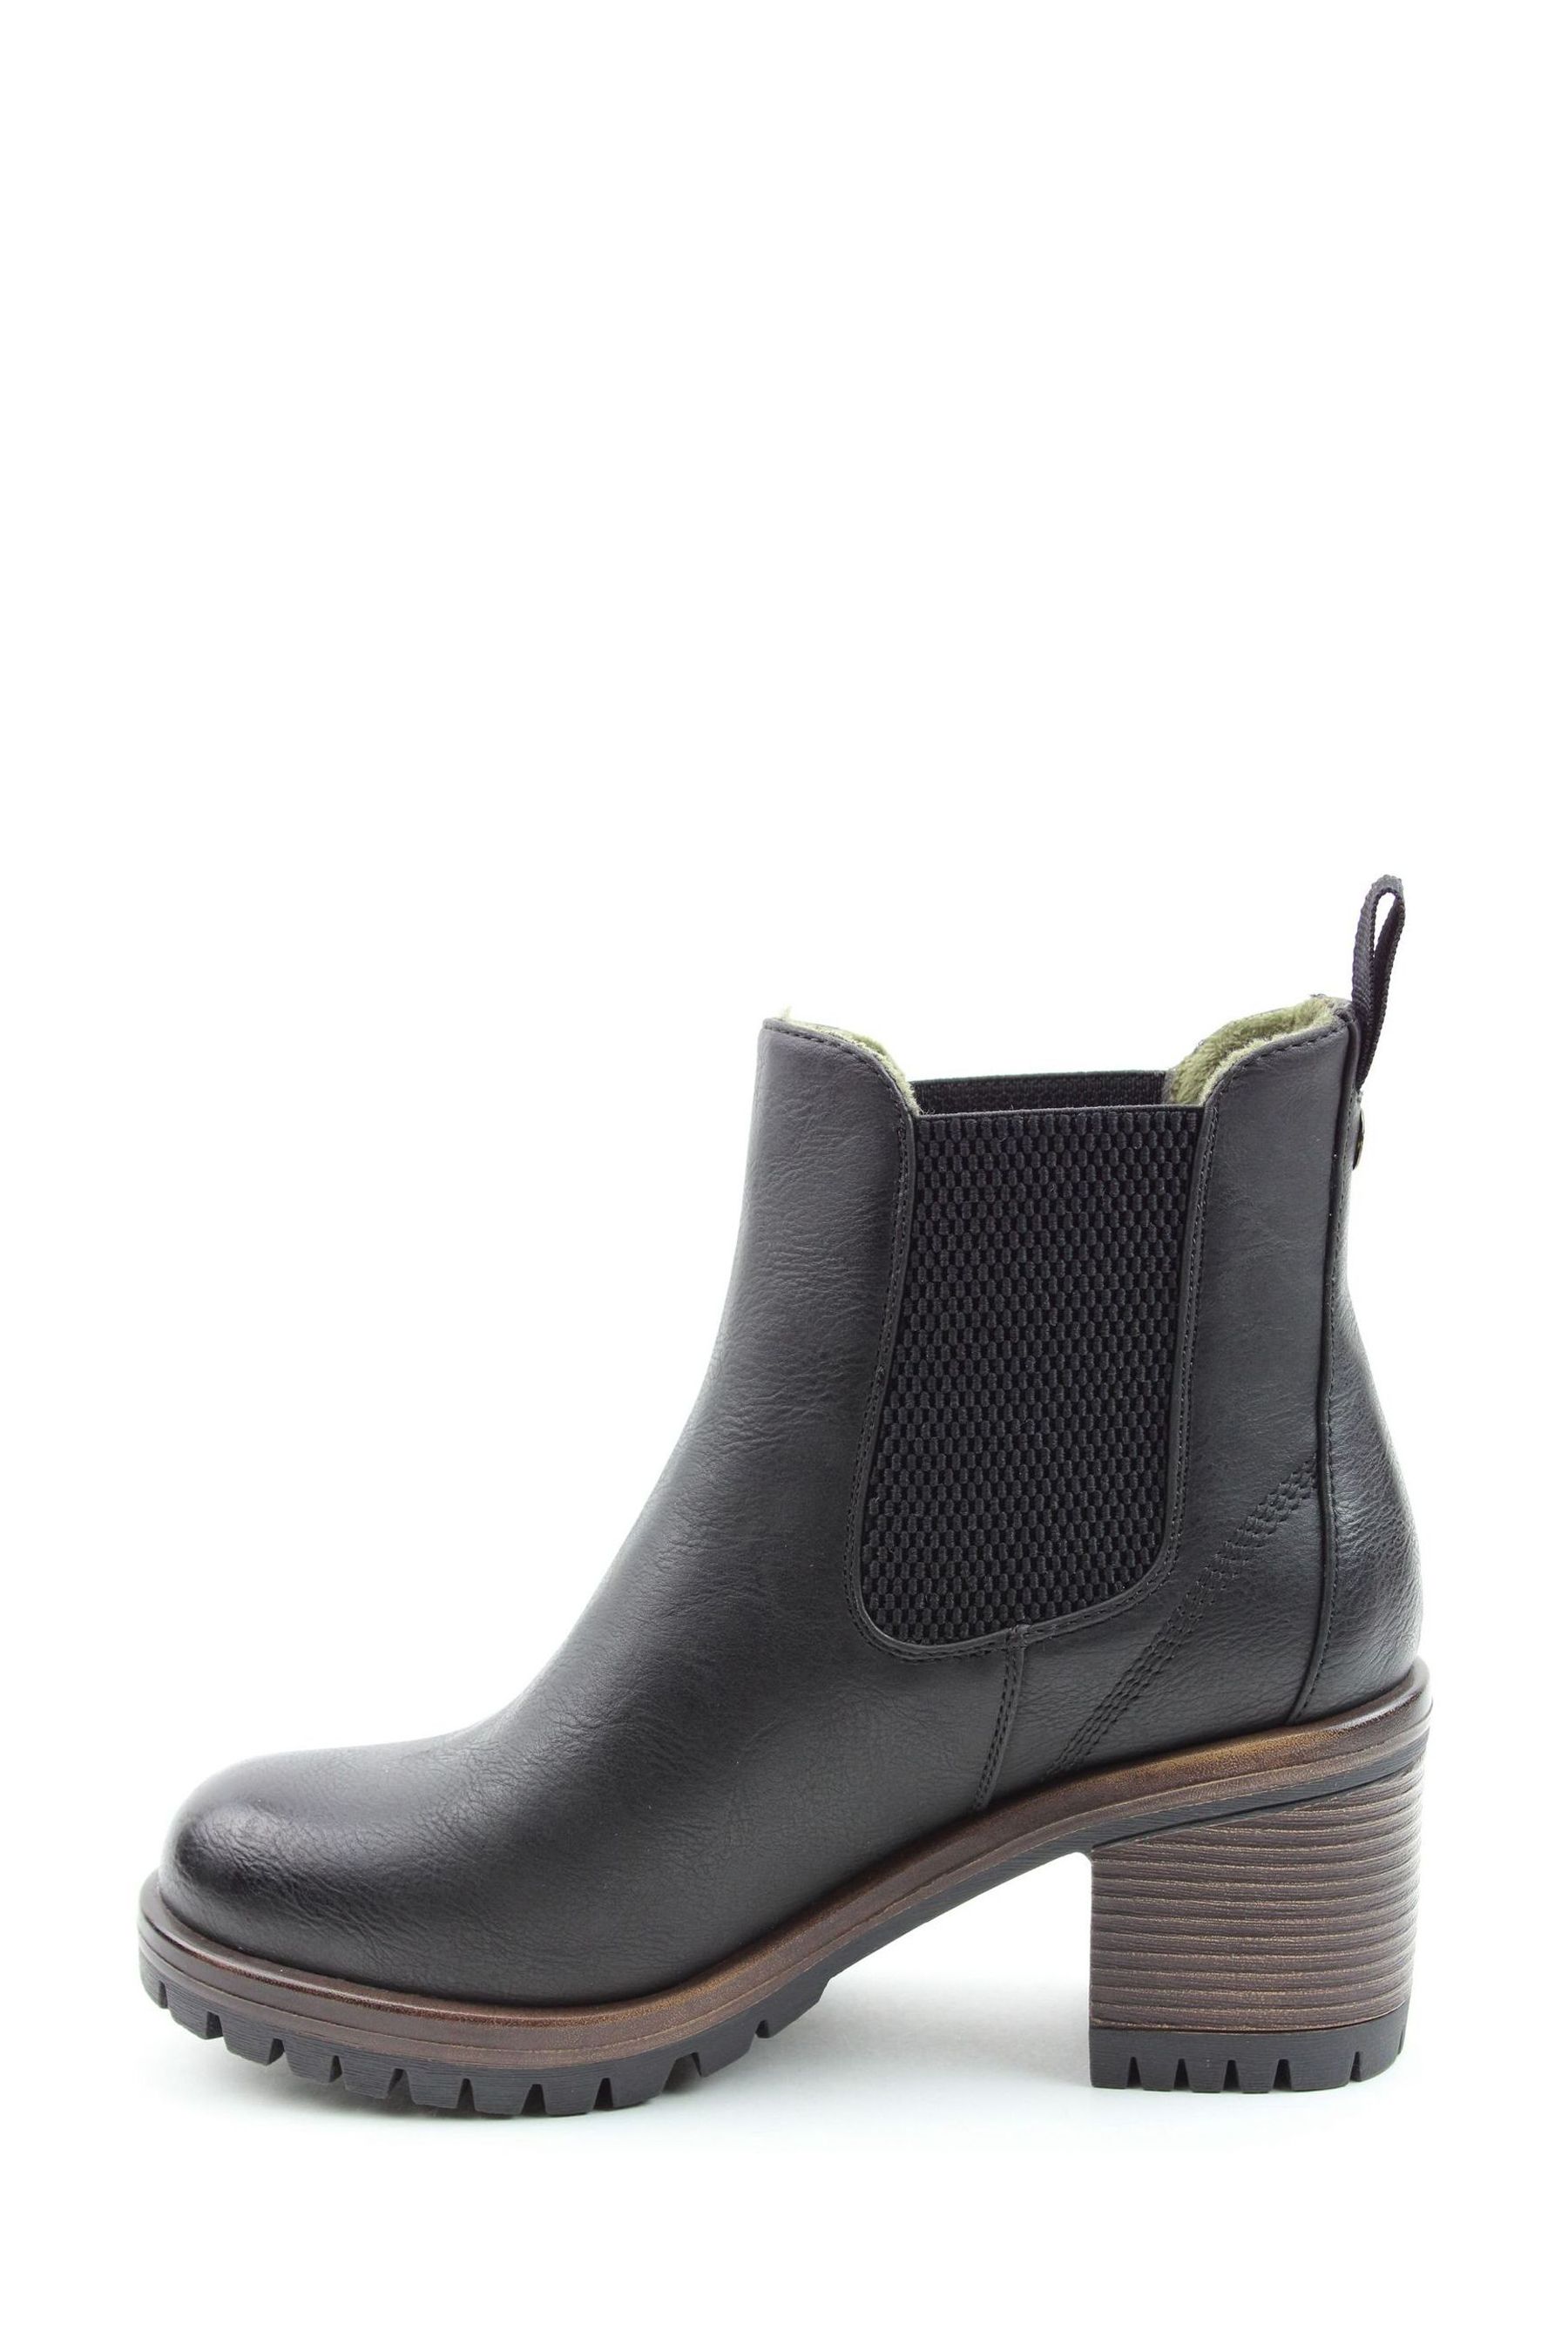 Buy Heavenly Feet Ladies Style Lyndsay Vegan Friendly Black Boots from ...